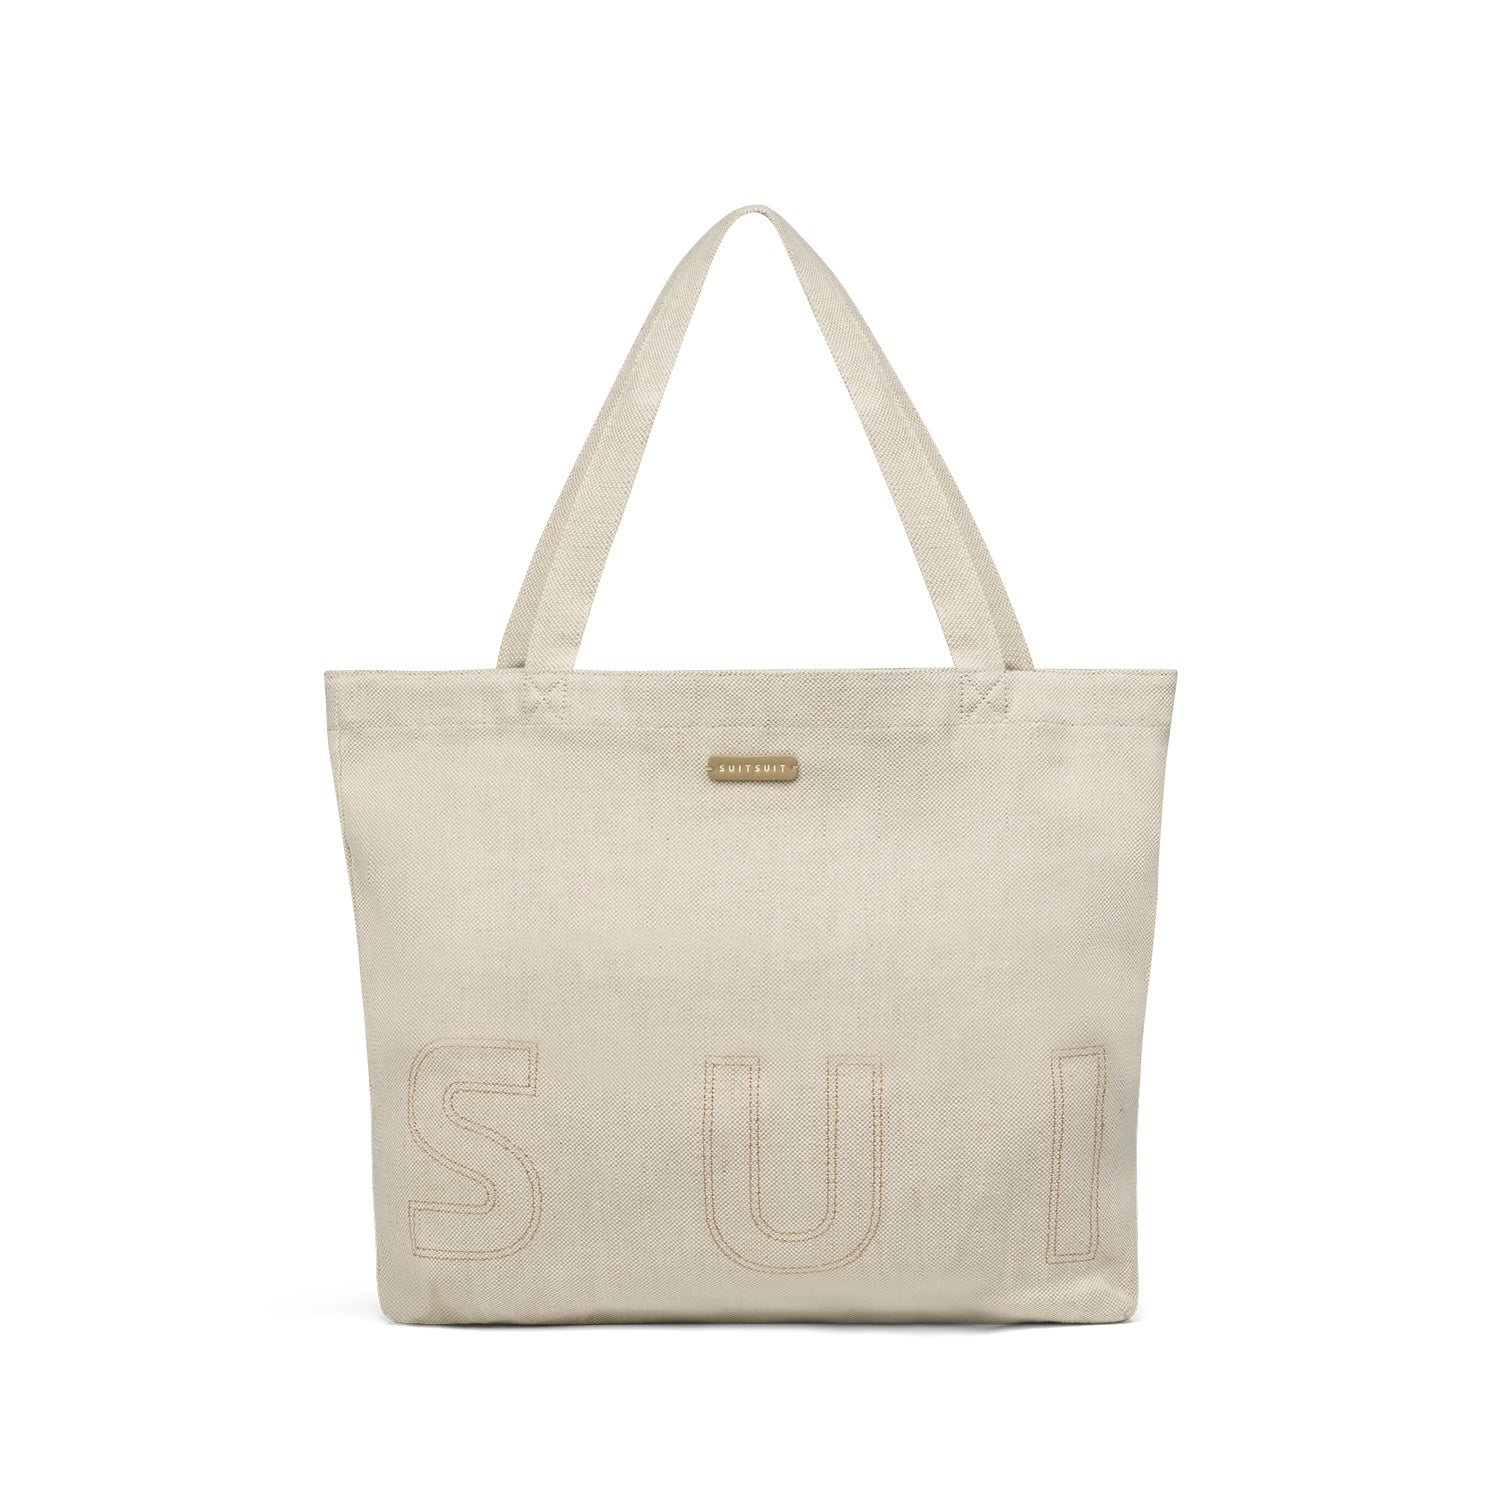 SUITSUIT - Fusion - Raw Cotton - Tote Bag